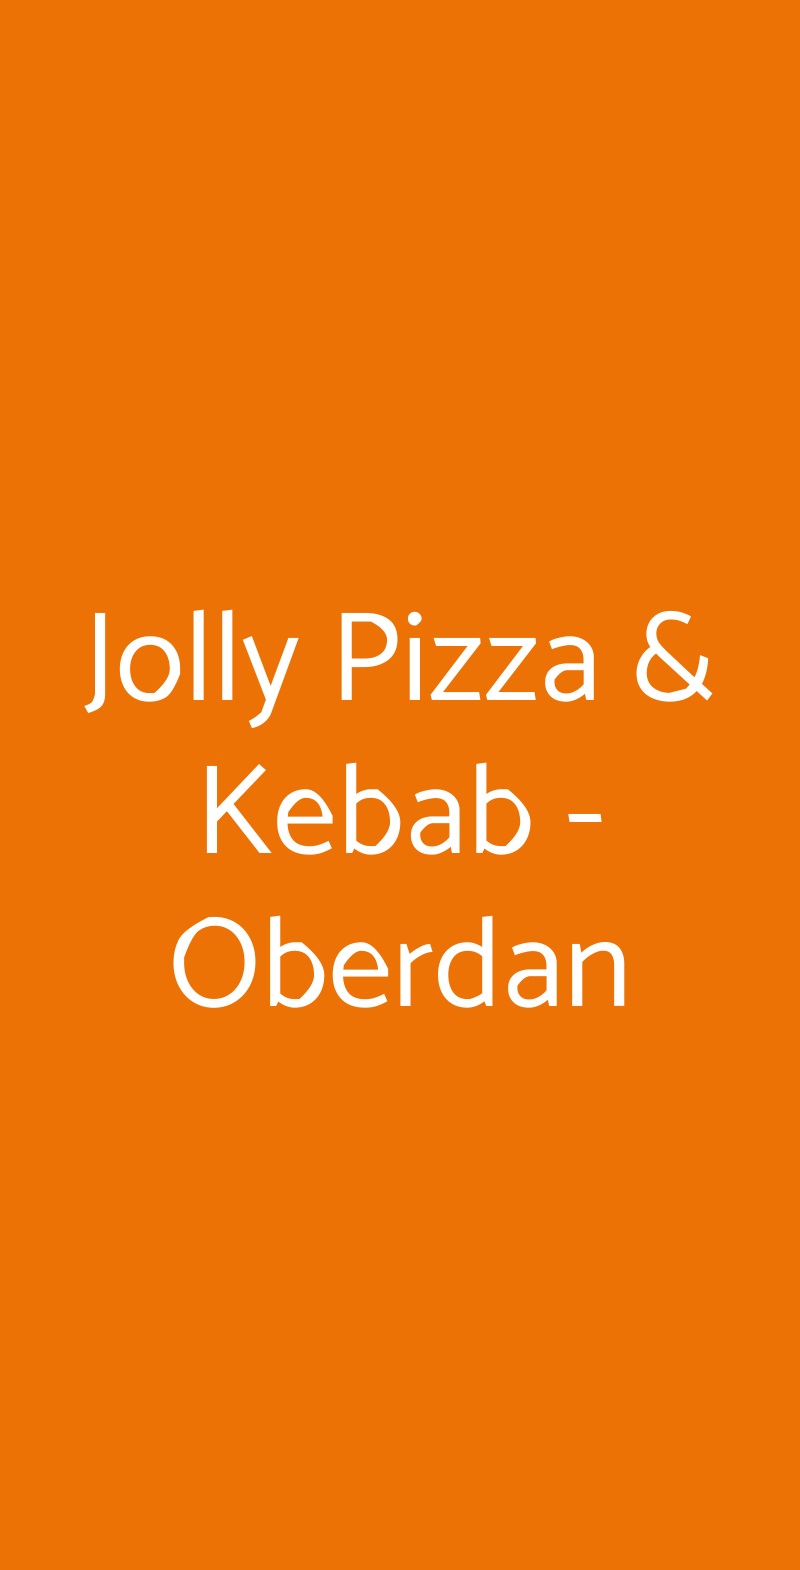 Jolly Pizza & Kebab - Oberdan Bologna menù 1 pagina